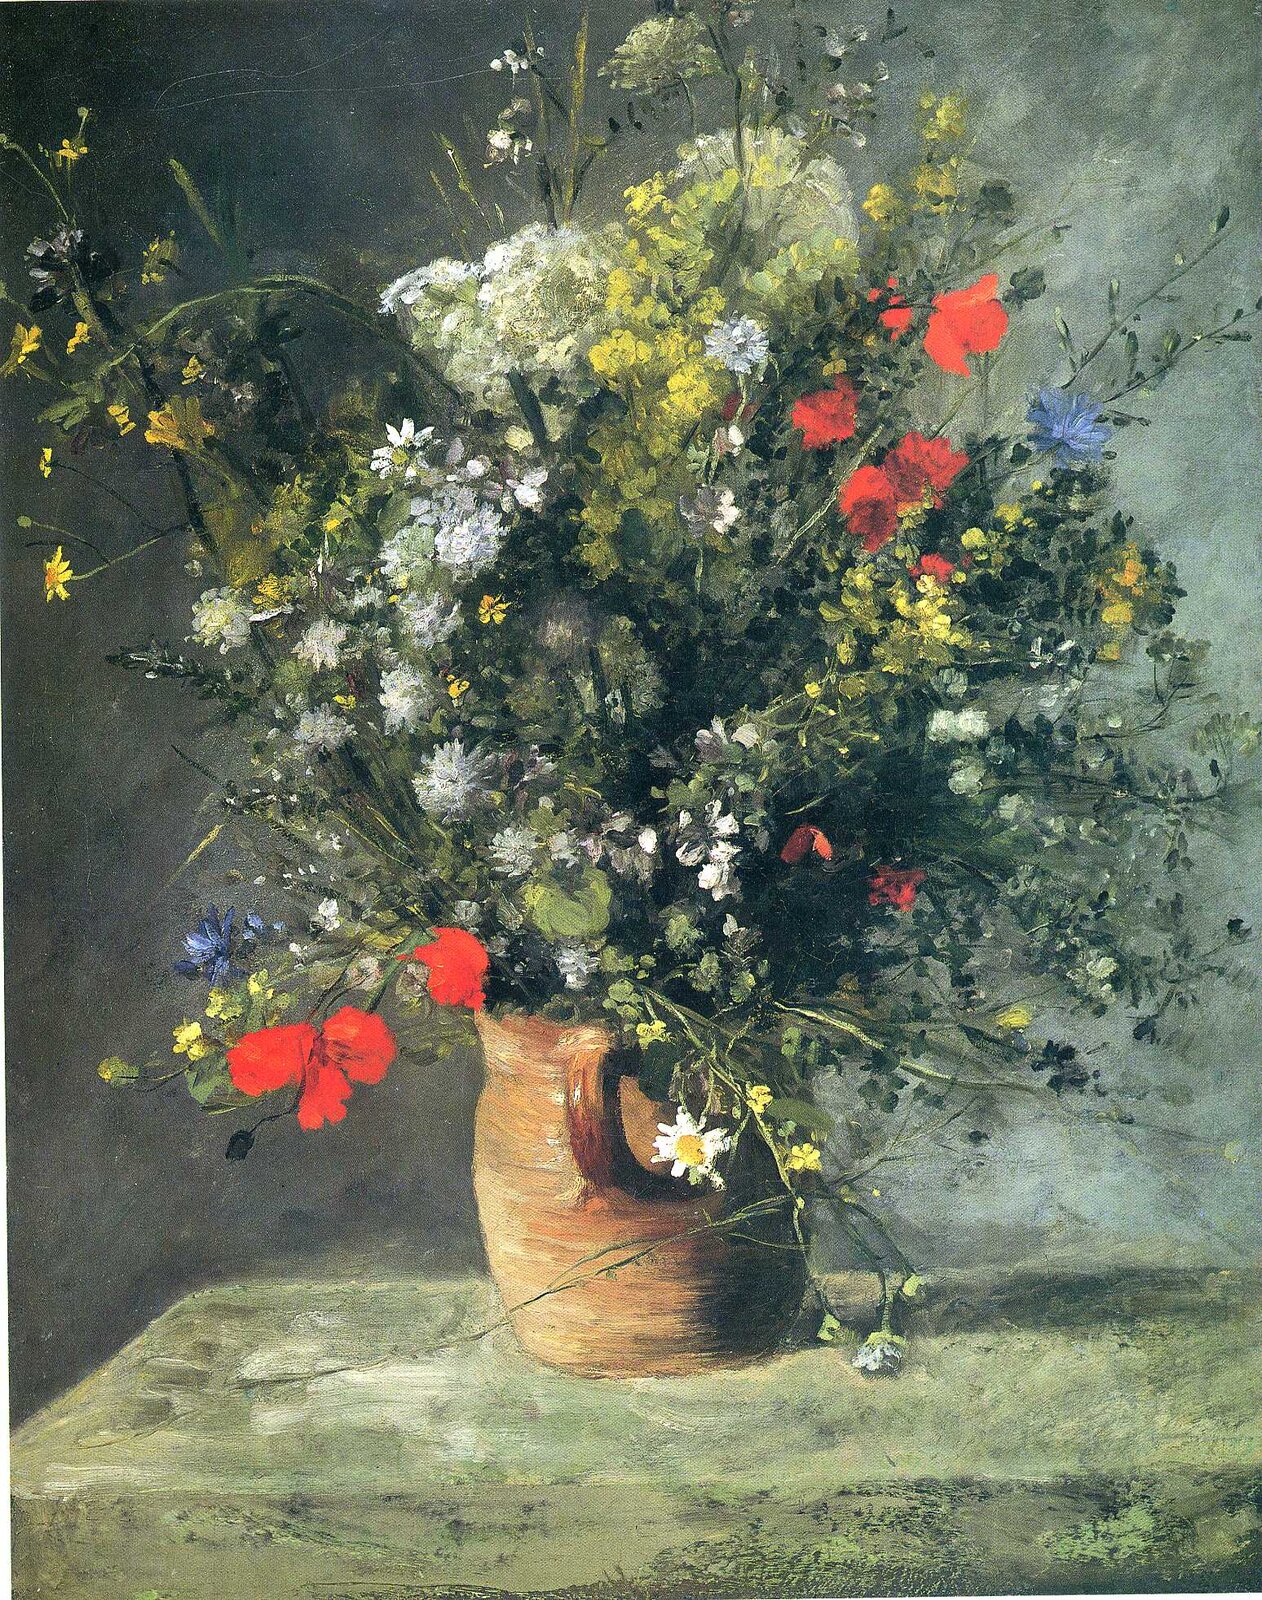 Ilustracja przedstawia obraz „Kwiaty w wazie” Auguste'a Renoira. Ukazuje martwą naturę, przedstawiającą stojący na zielonym blacie bukiet polnych kwiatów w brązowym, glinianym wazonie. Wśród kwiatów są między innymi czerwone maki, chabry, rumianki, jaskry. Bukiet znajduje się w centrum obrazu. Tłem jest zielono-szara ściana.